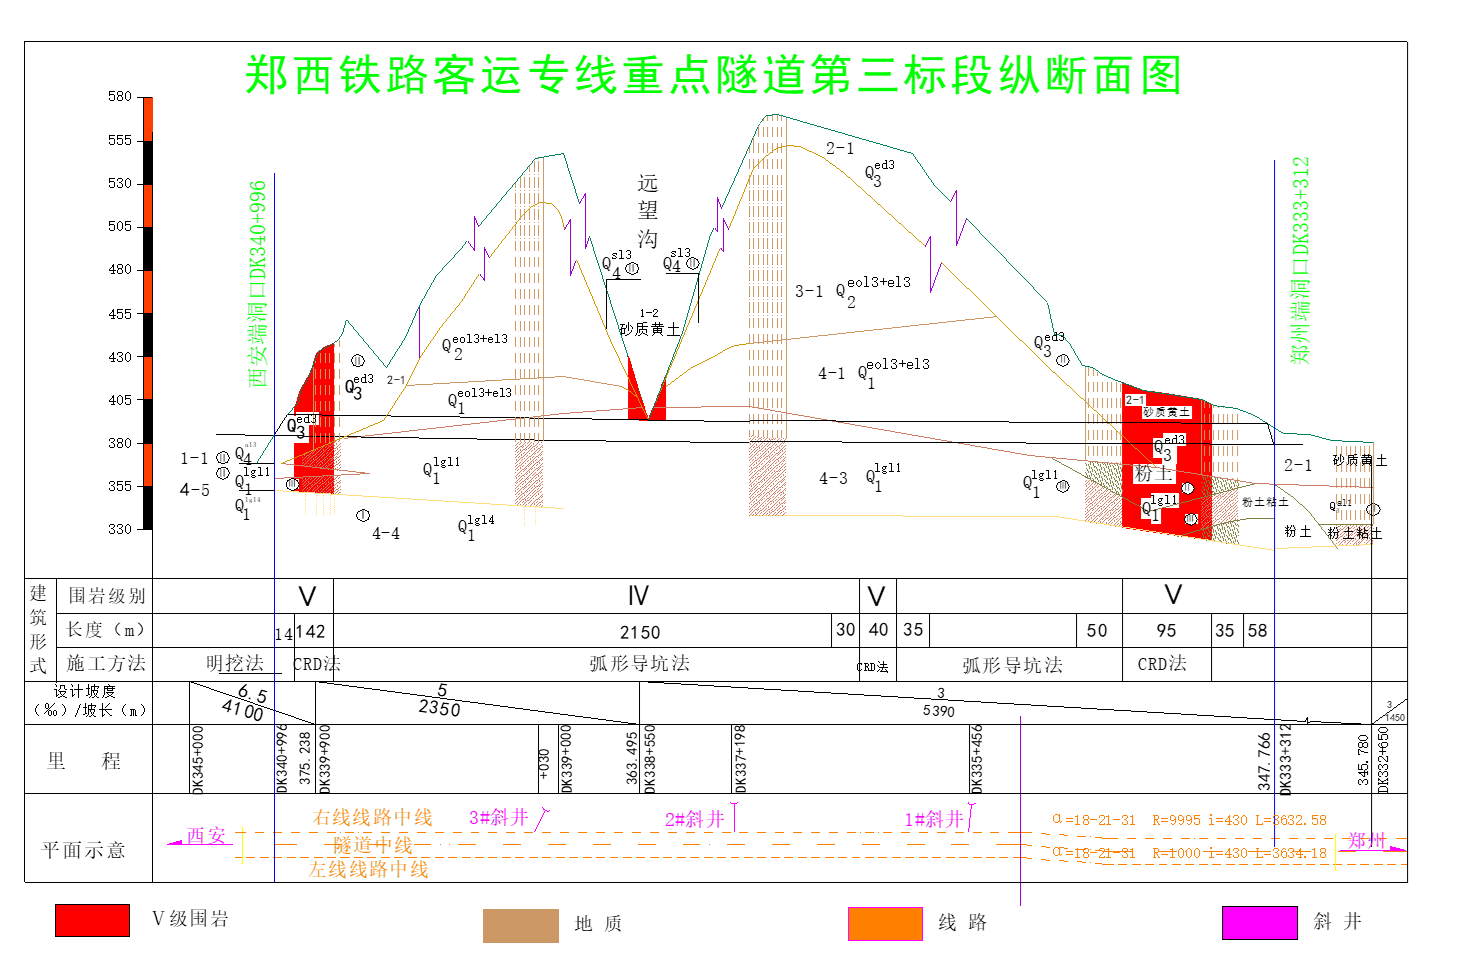 郑西铁路客运专线重点隧道第三标段纵断面图